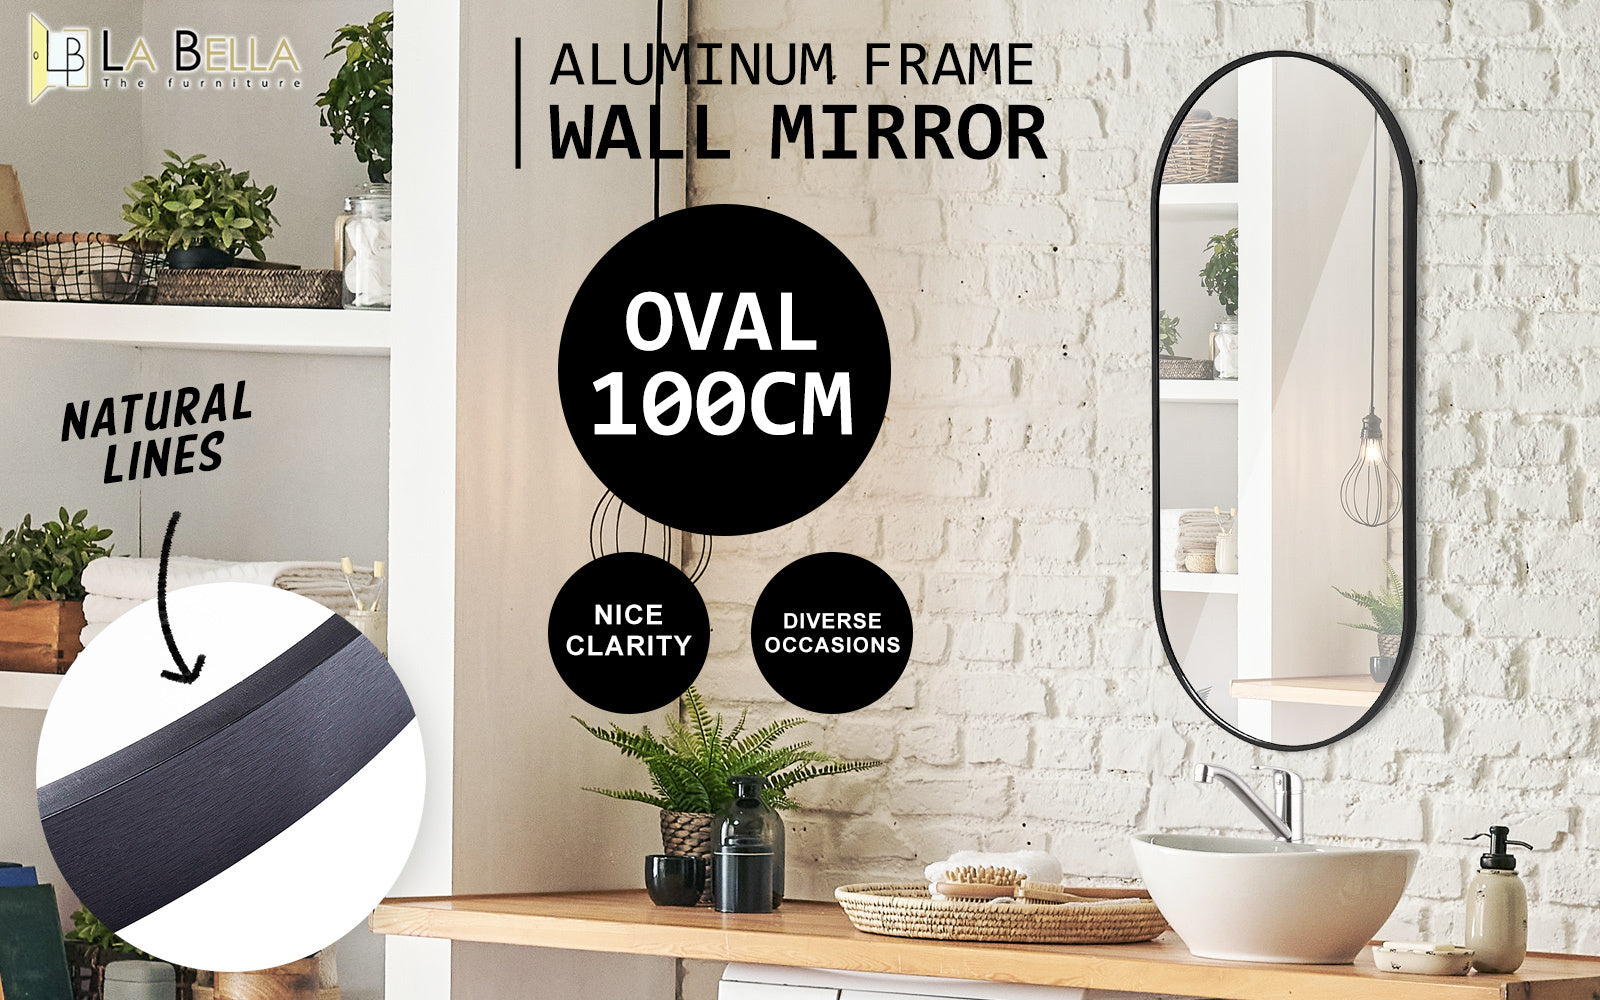 La Bella Black Wall Mirror Oval Aluminum Frame Makeup Decor Bathroom Vanity 45x100cm